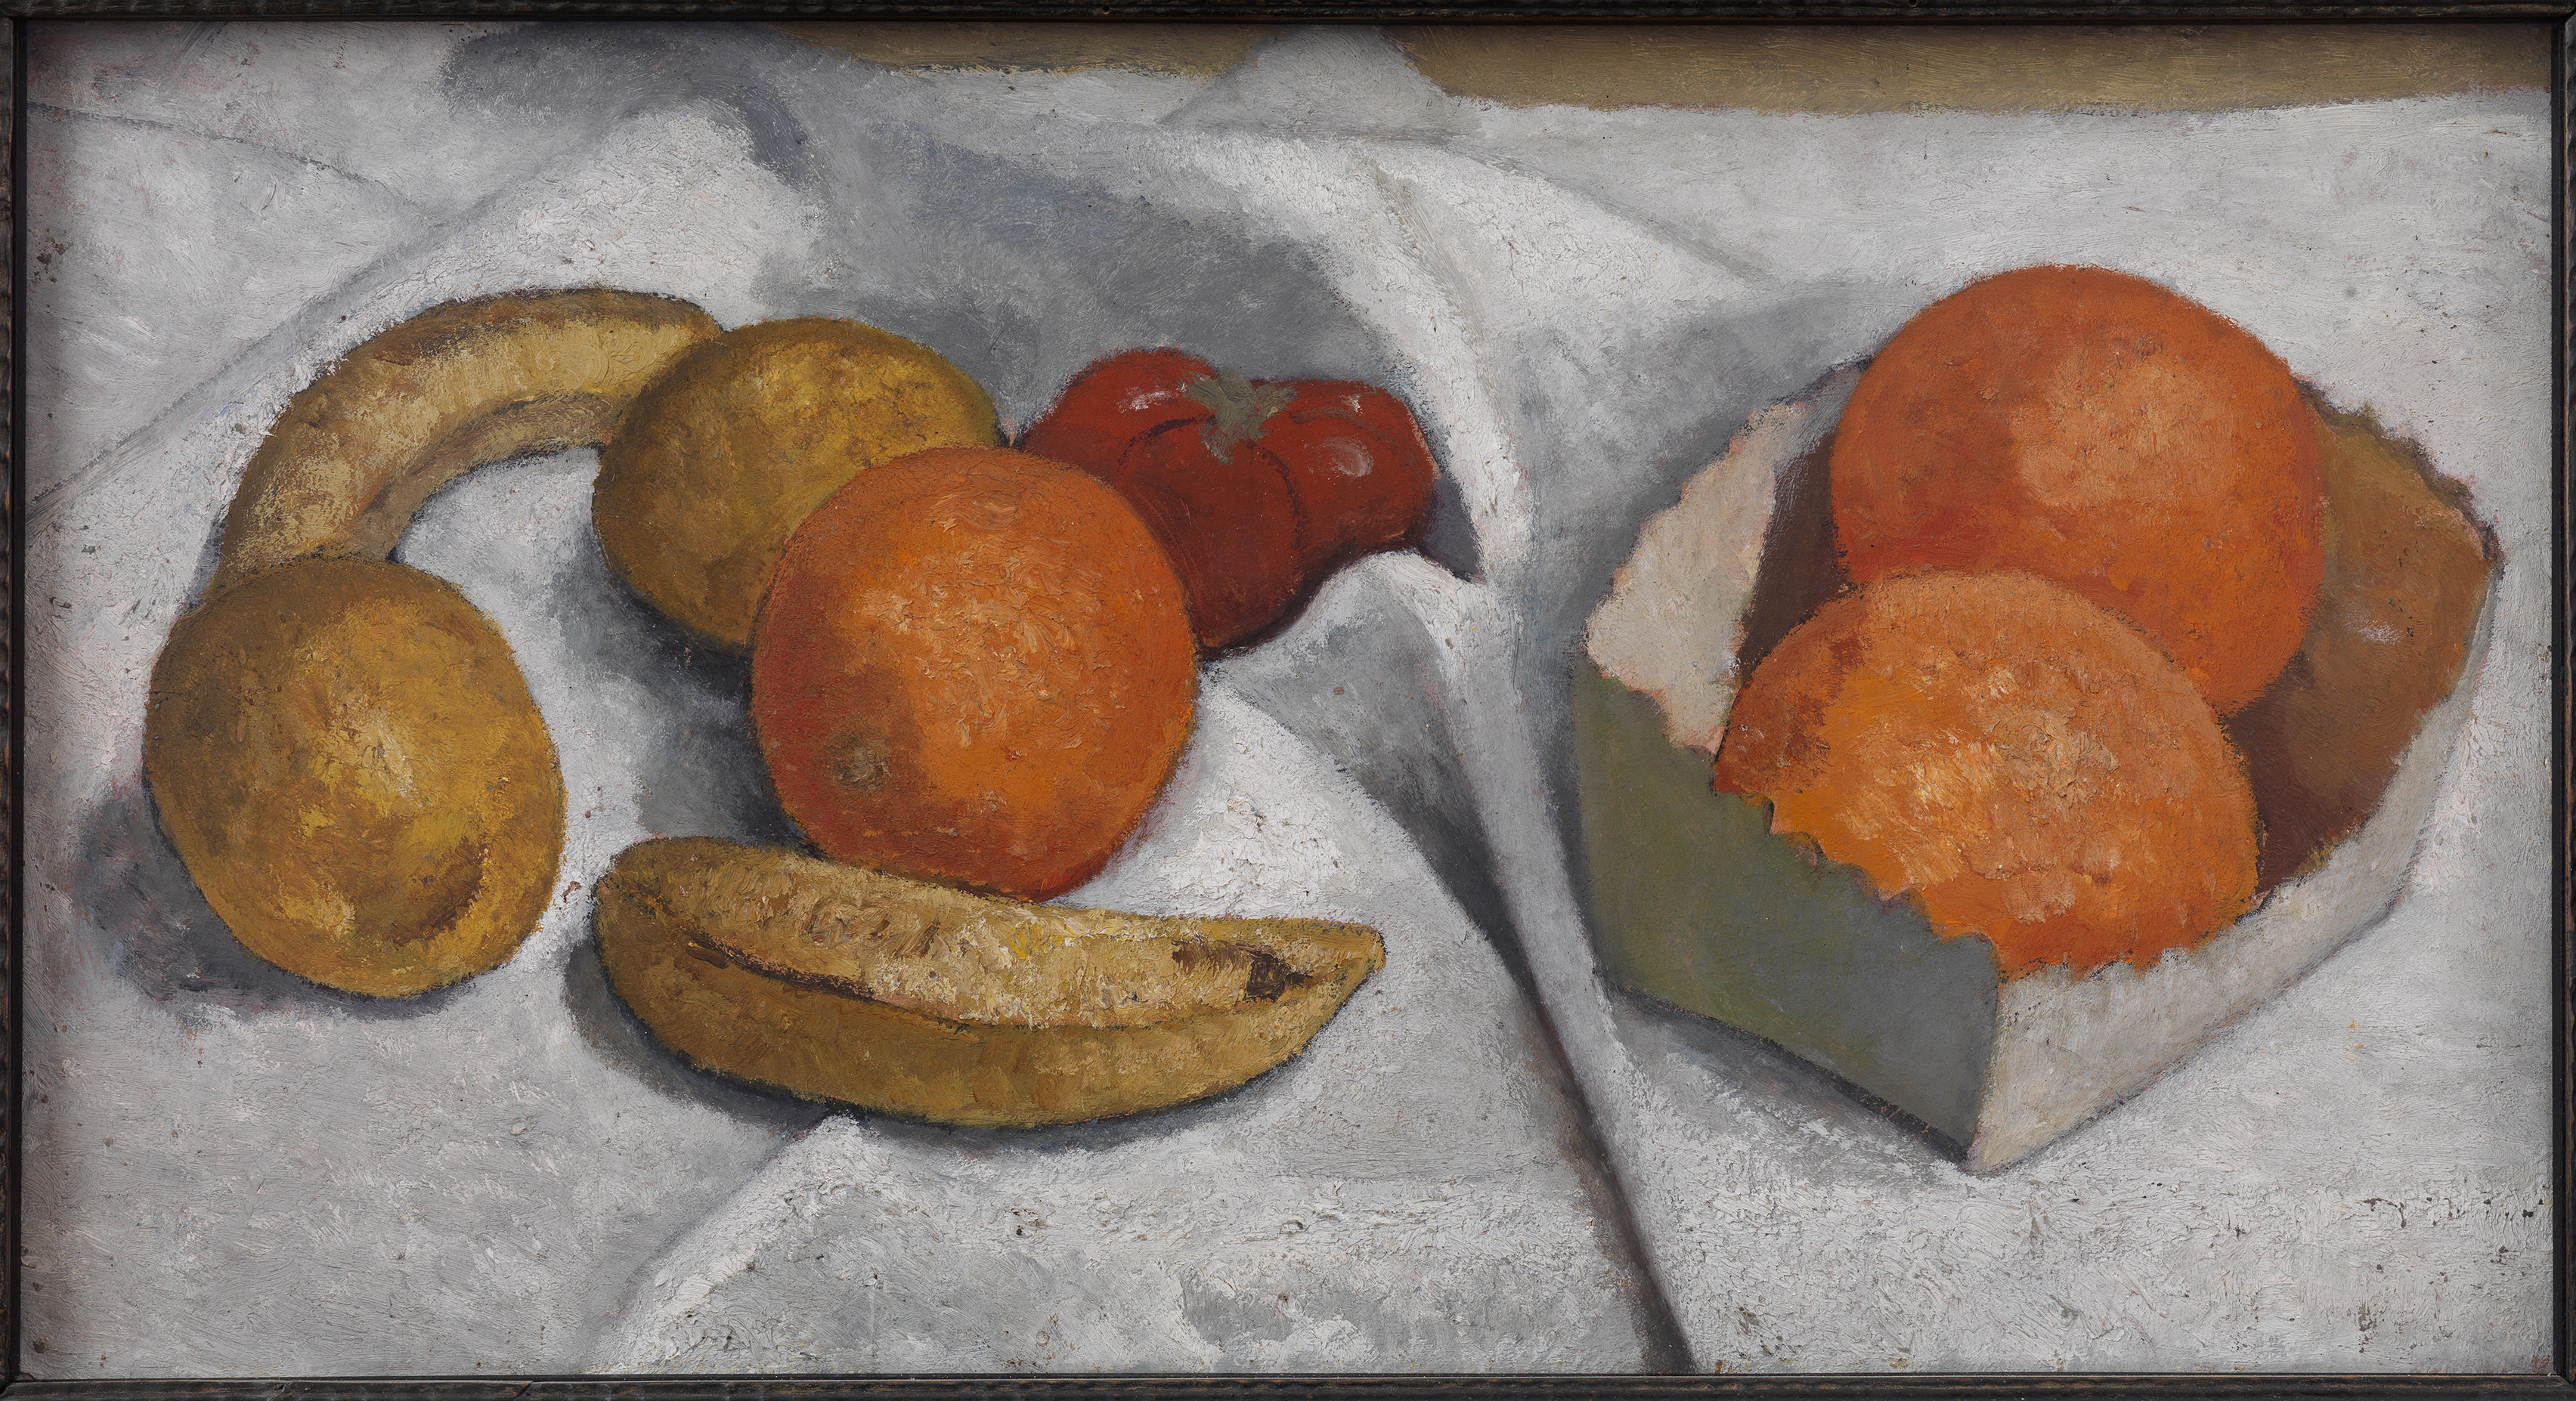 오렌지, 바나나, 레몬, 토마토가 있는 정물 (The Still Life with Oranges, Bananas, Lemons and Tomatoes) by Paula Modersohn-Becker - 1906 - 28.2 x 52.2 cm 